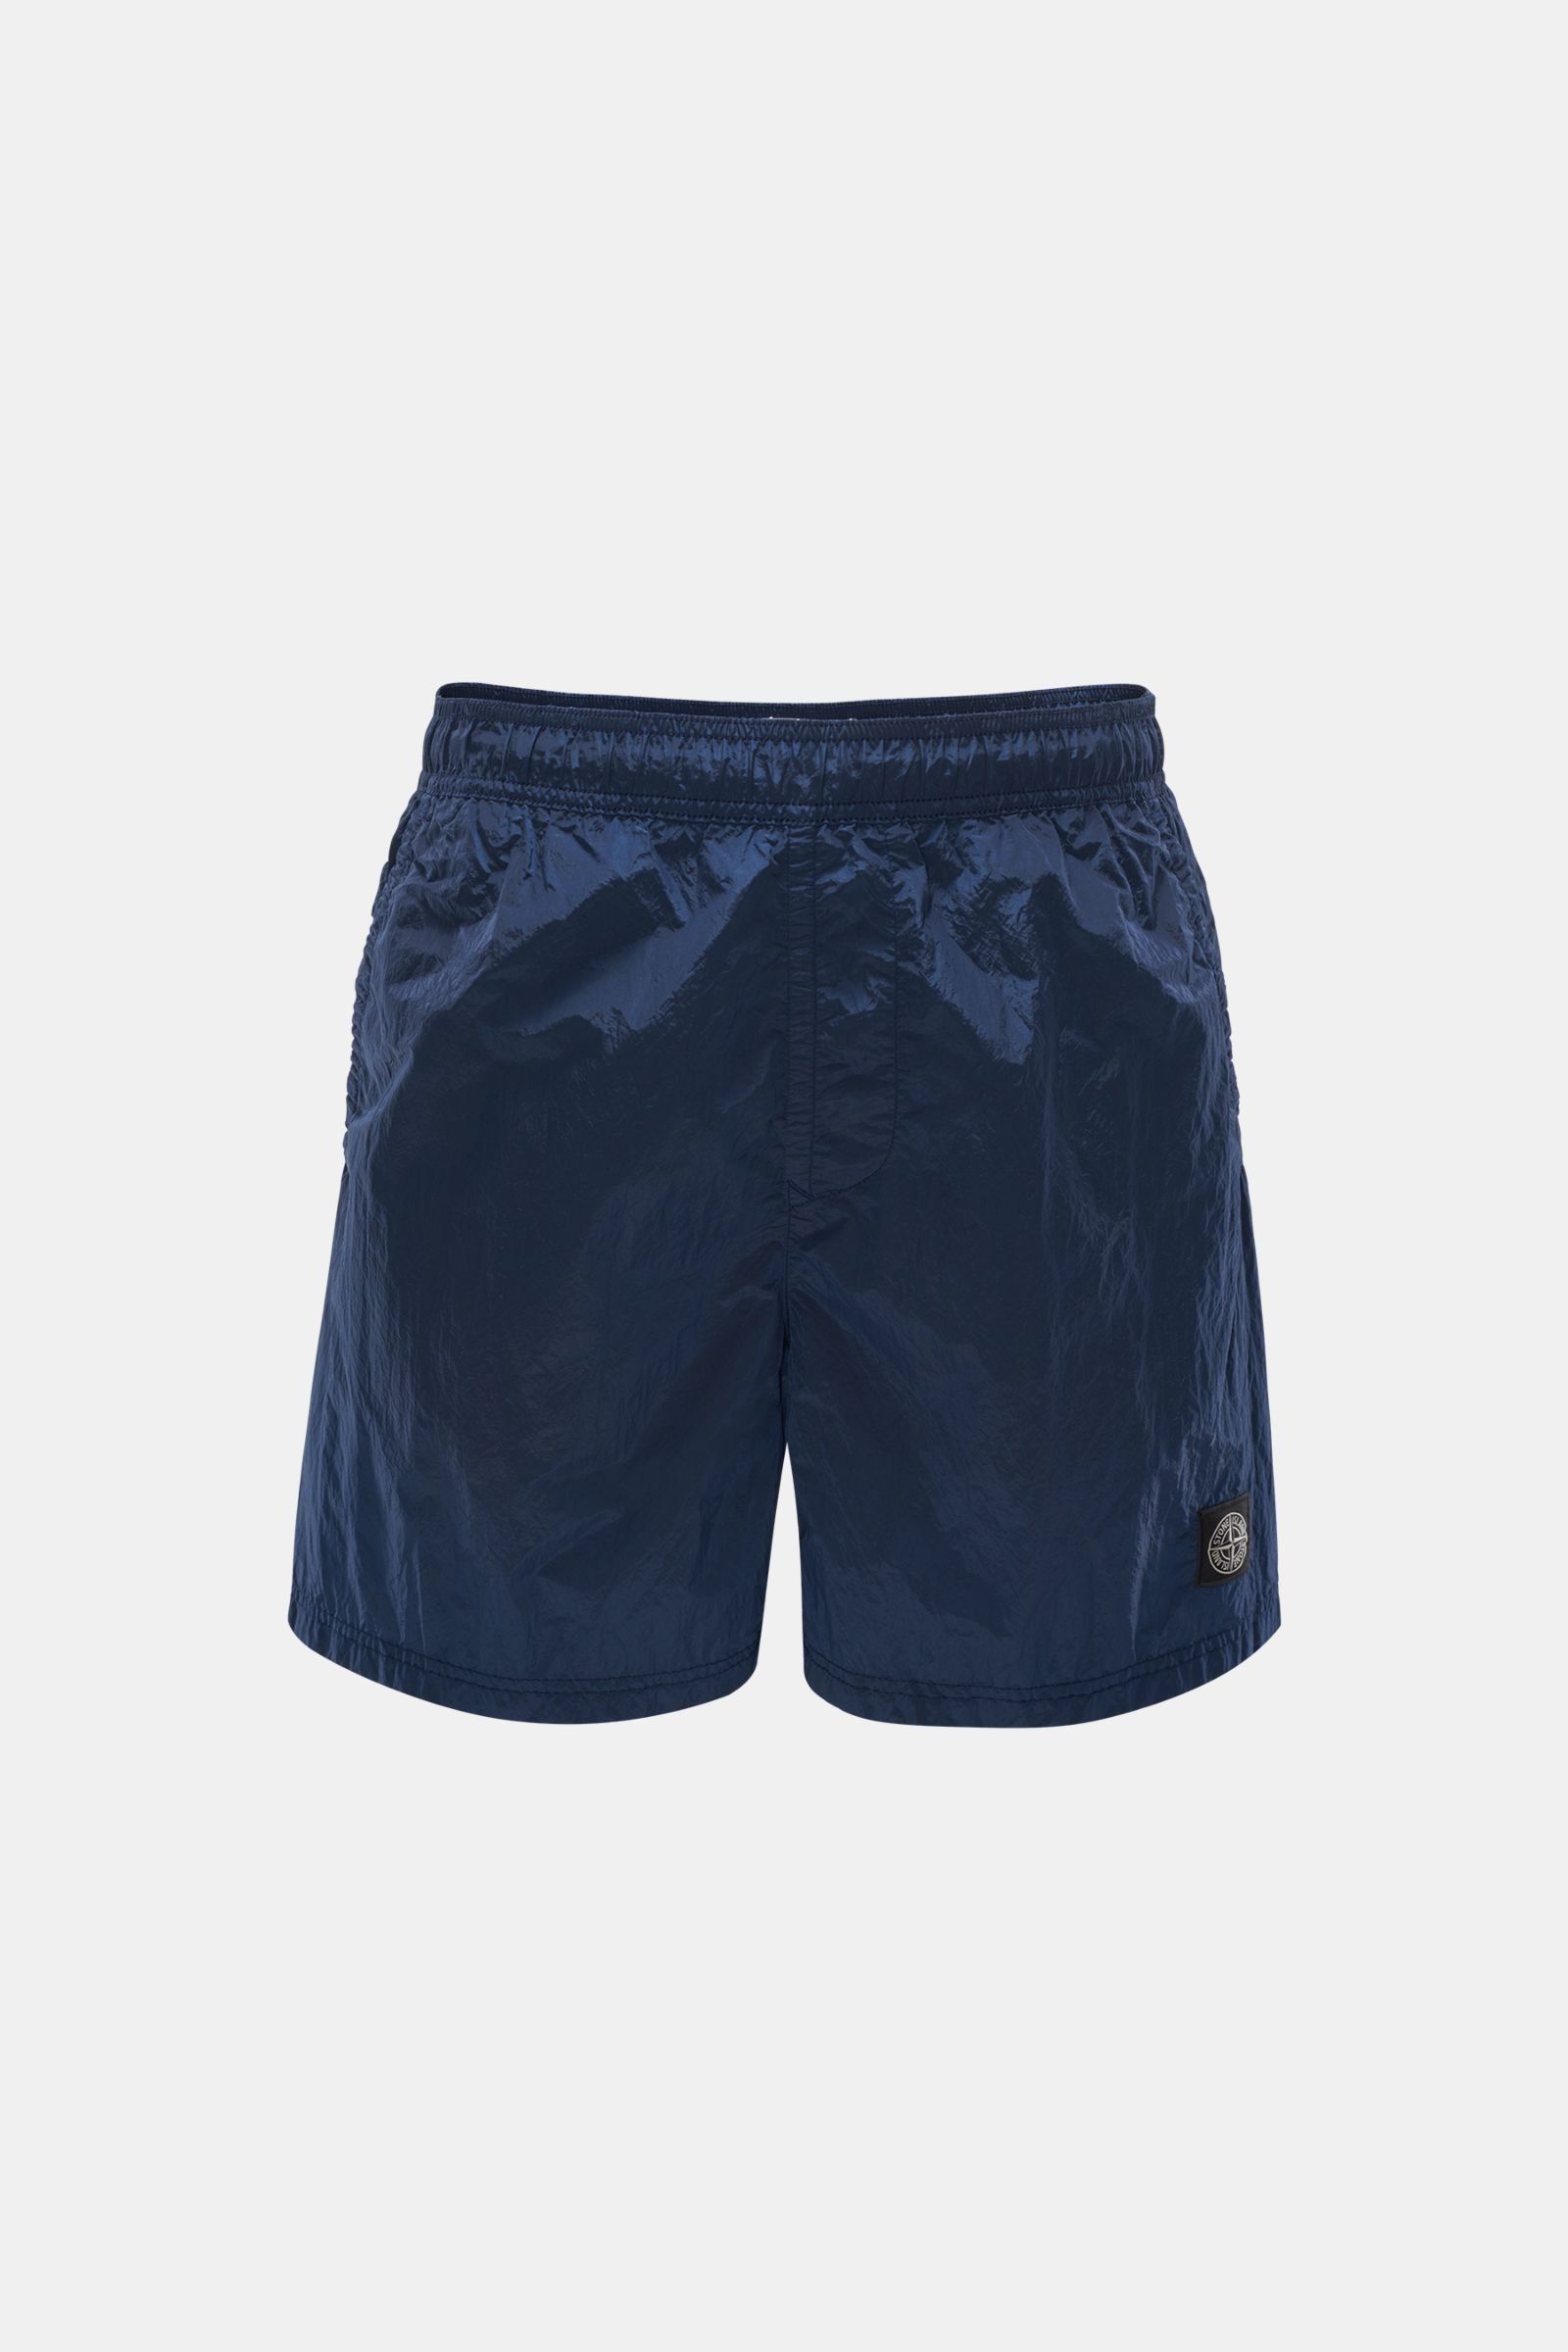 Swim shorts navy